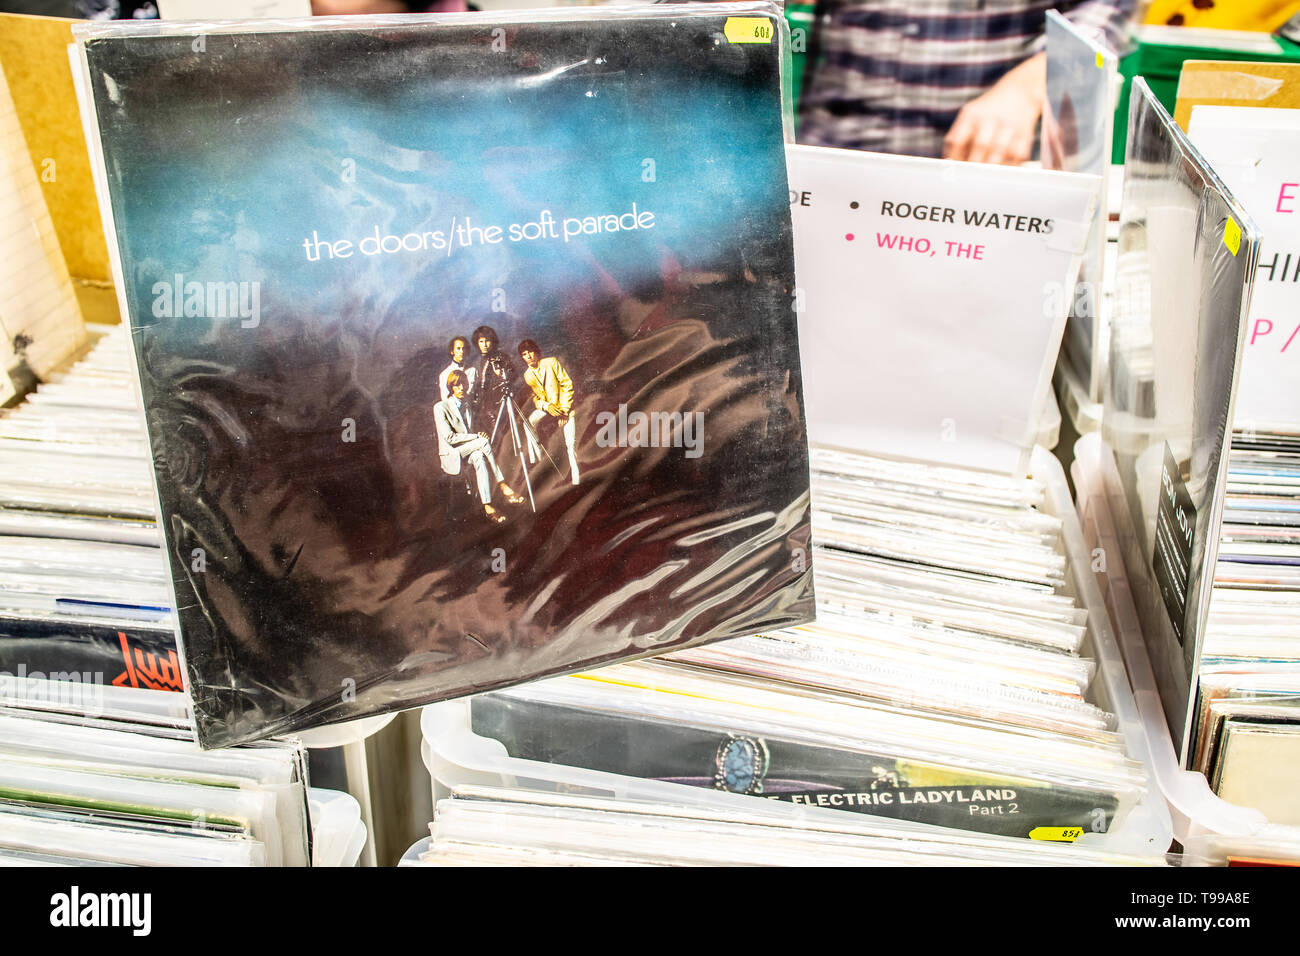 Nadarzyn, Polonia, 11 maggio 2019 le porte album in vinile sul display per la vendita, vinile, LP, Album rock, rock americano band, collezione di vinili Foto Stock